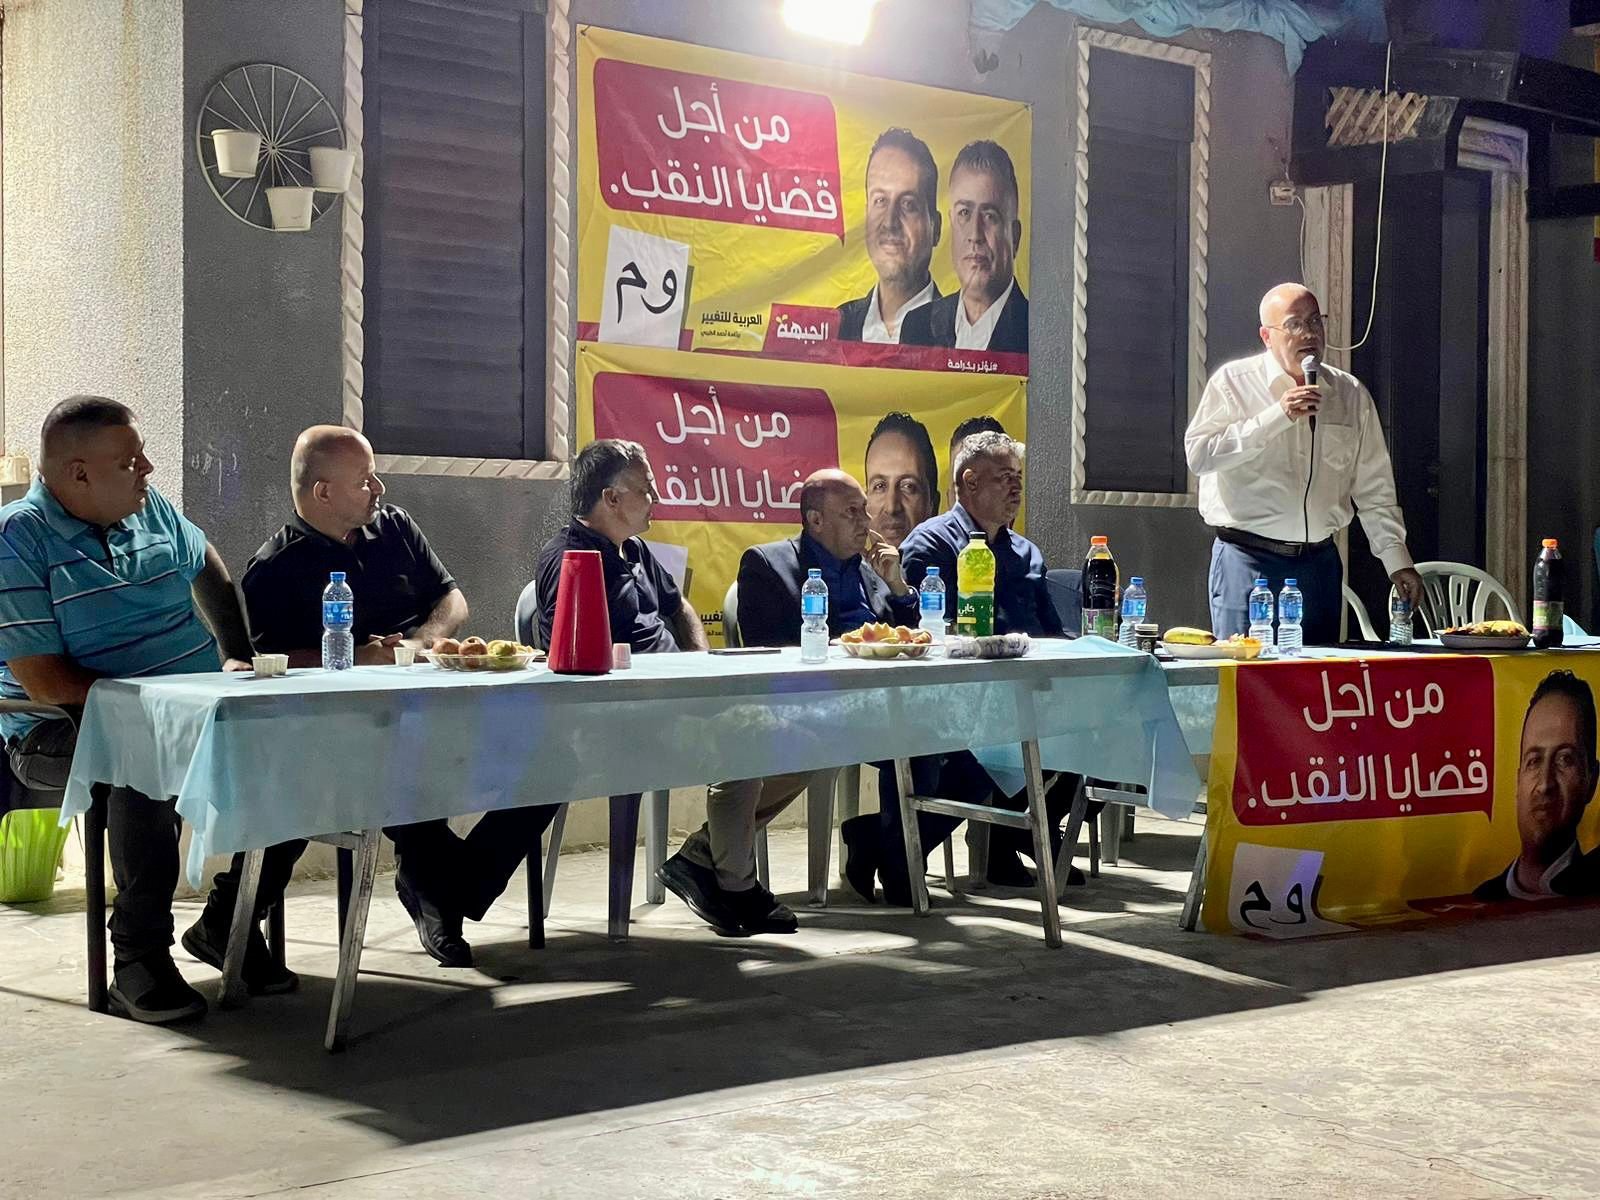 رهط اجتماع انتخابي داعم لقائمة الجبهة والعربية للتغيير-0